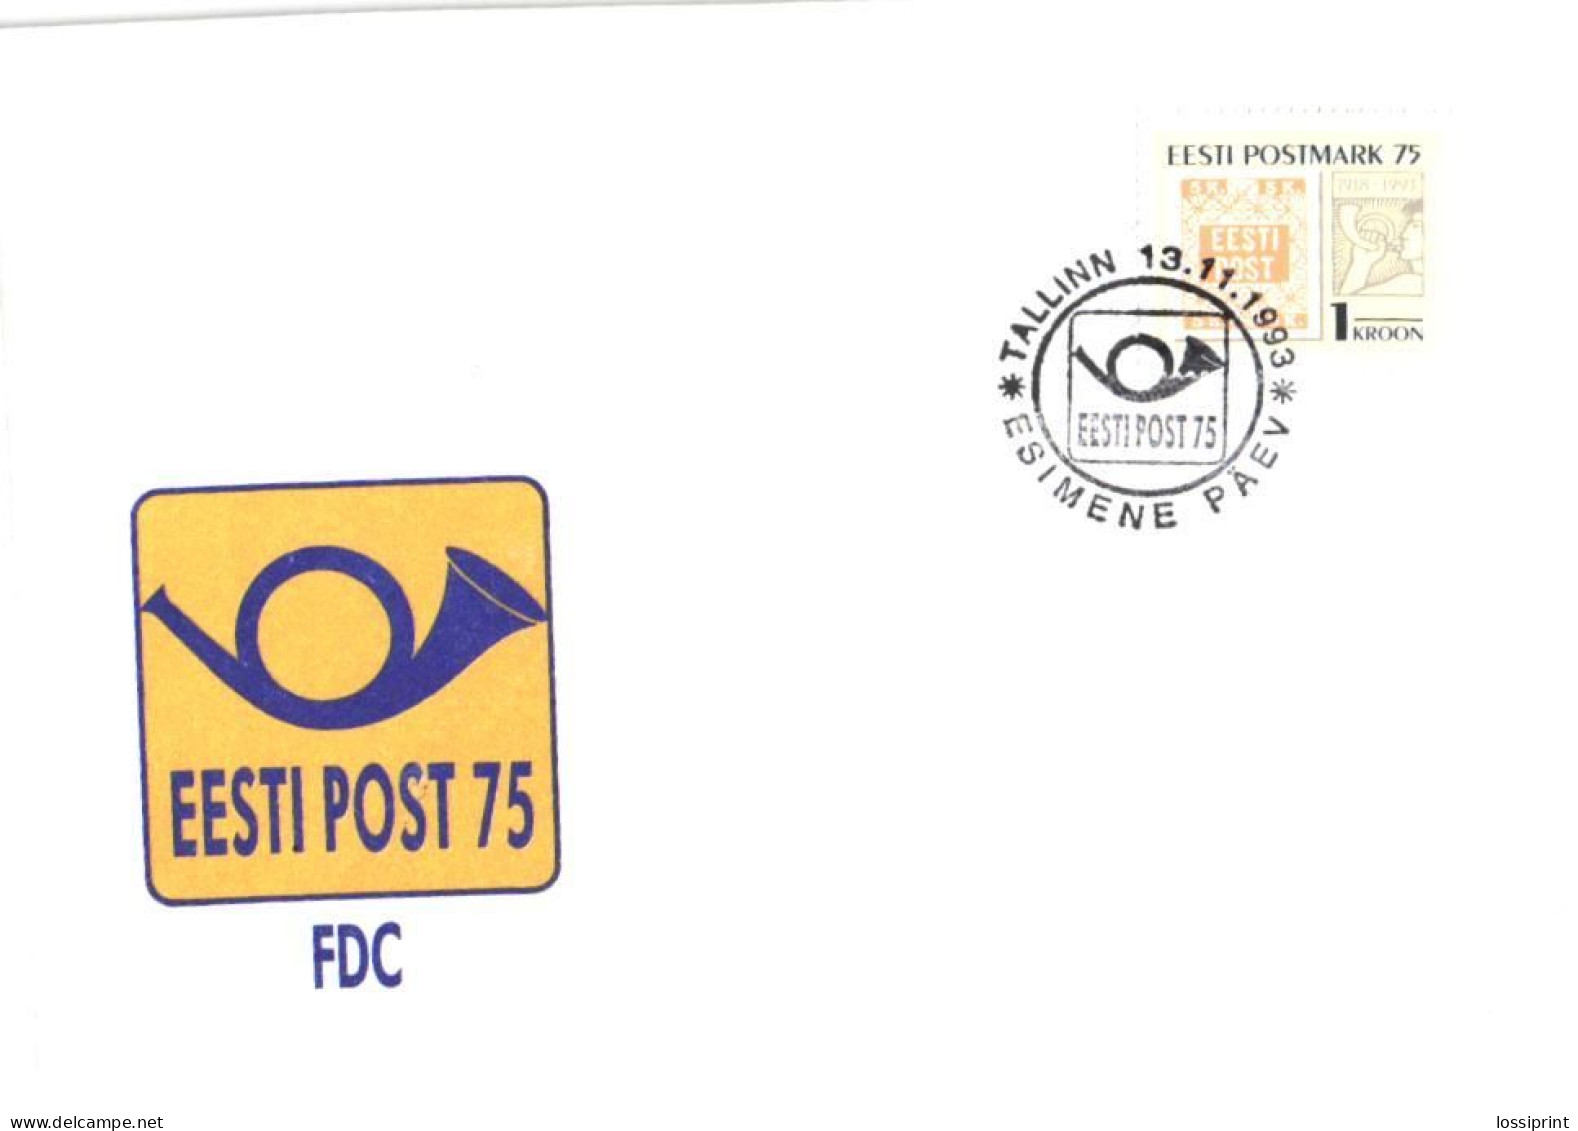 Estonia:FDC, Estonian Postal Stamp 75, 1993 - Estonia